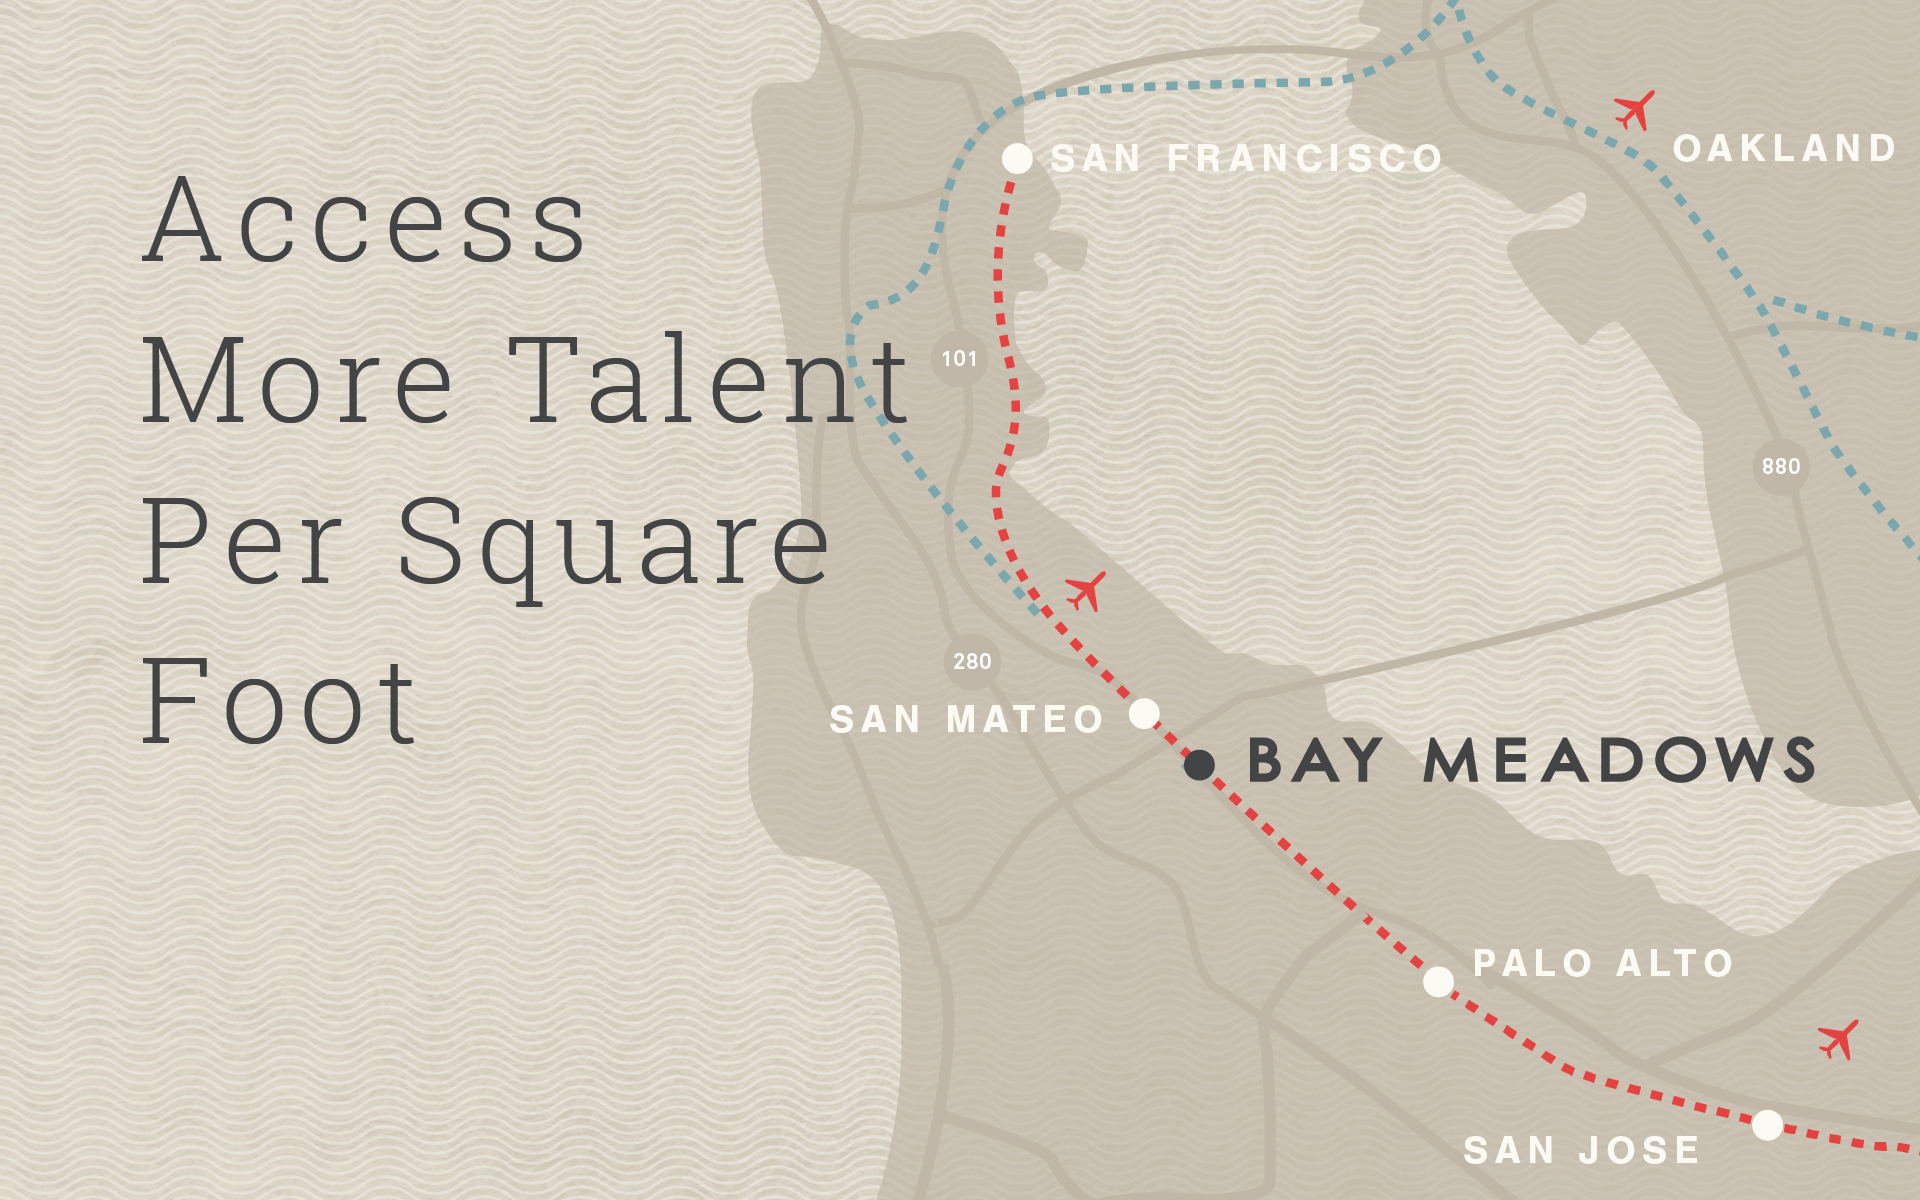 Access more talent per square foot